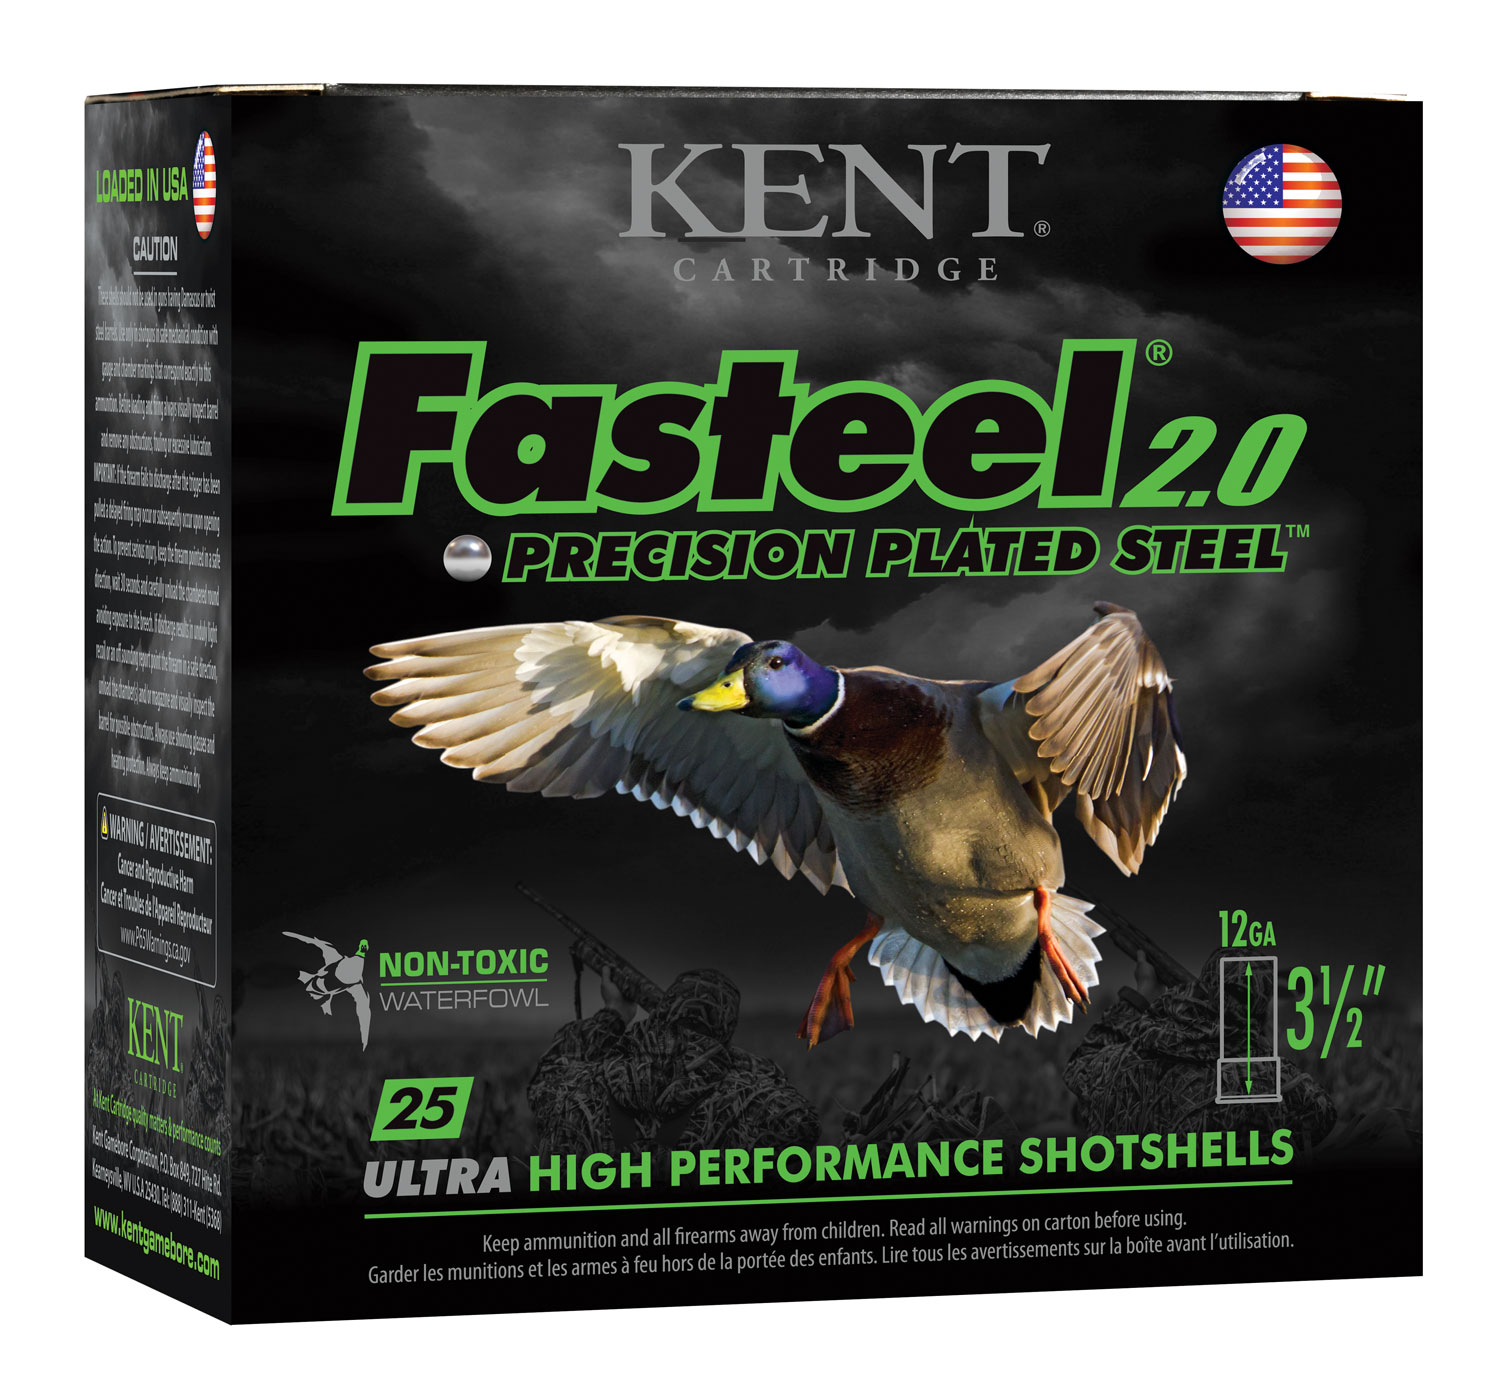 Kent Cartridge K1235FS362 Fasteel 2.0  12 Gauge 3.50